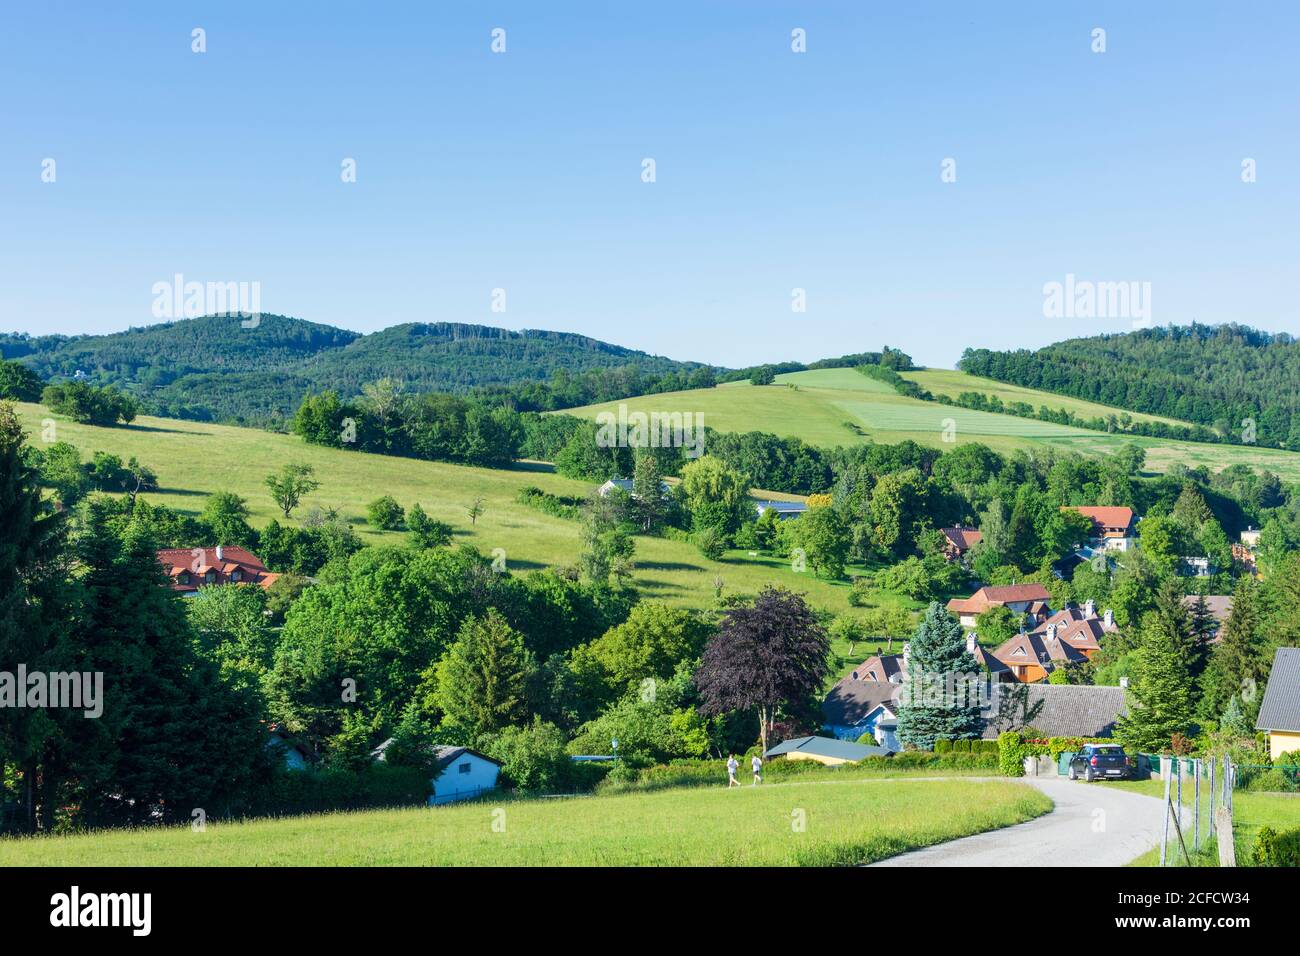 Tullnerbach, village Irenental, mountain Troppberg in Wienerwald, Vienna Woods, Niederösterreich / Lower Austria, Austria Stock Photo